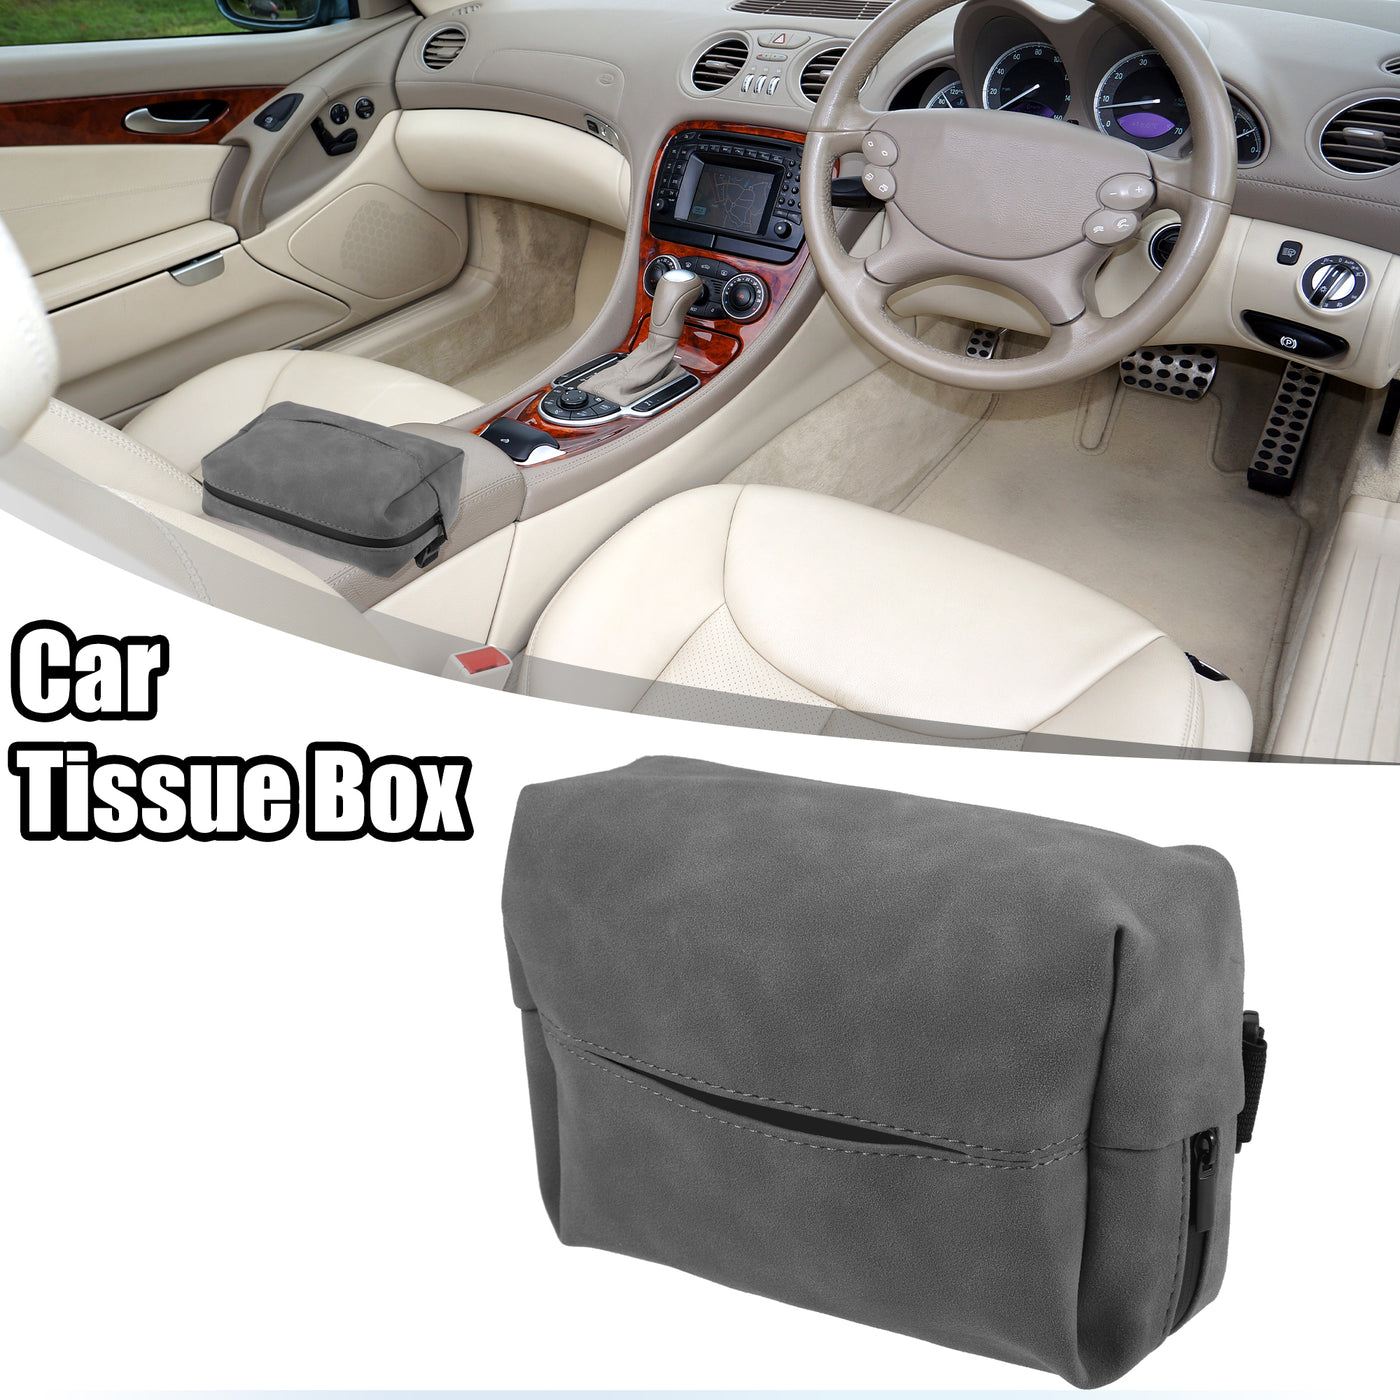 ACROPIX Car Center Armrest Back Seat Universal Car Tissue Box Car Visor Tissue Holder - Pack of 1